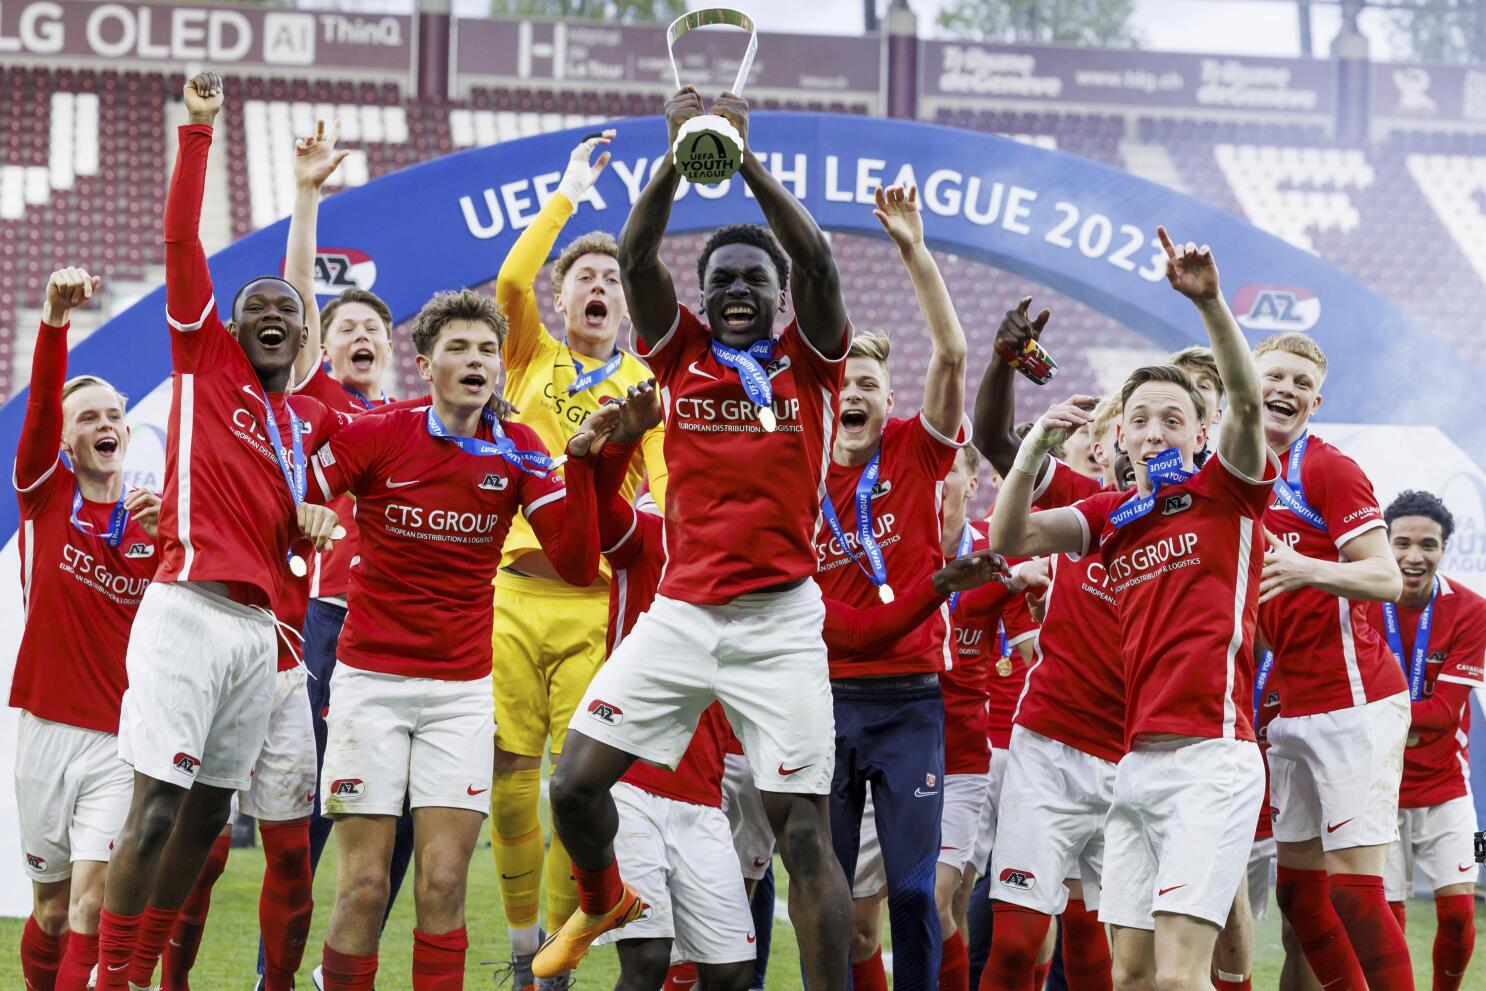 Meet the UEFA Youth League finalists: AZ Alkmaar vs Hajduk Split, UEFA  Youth League